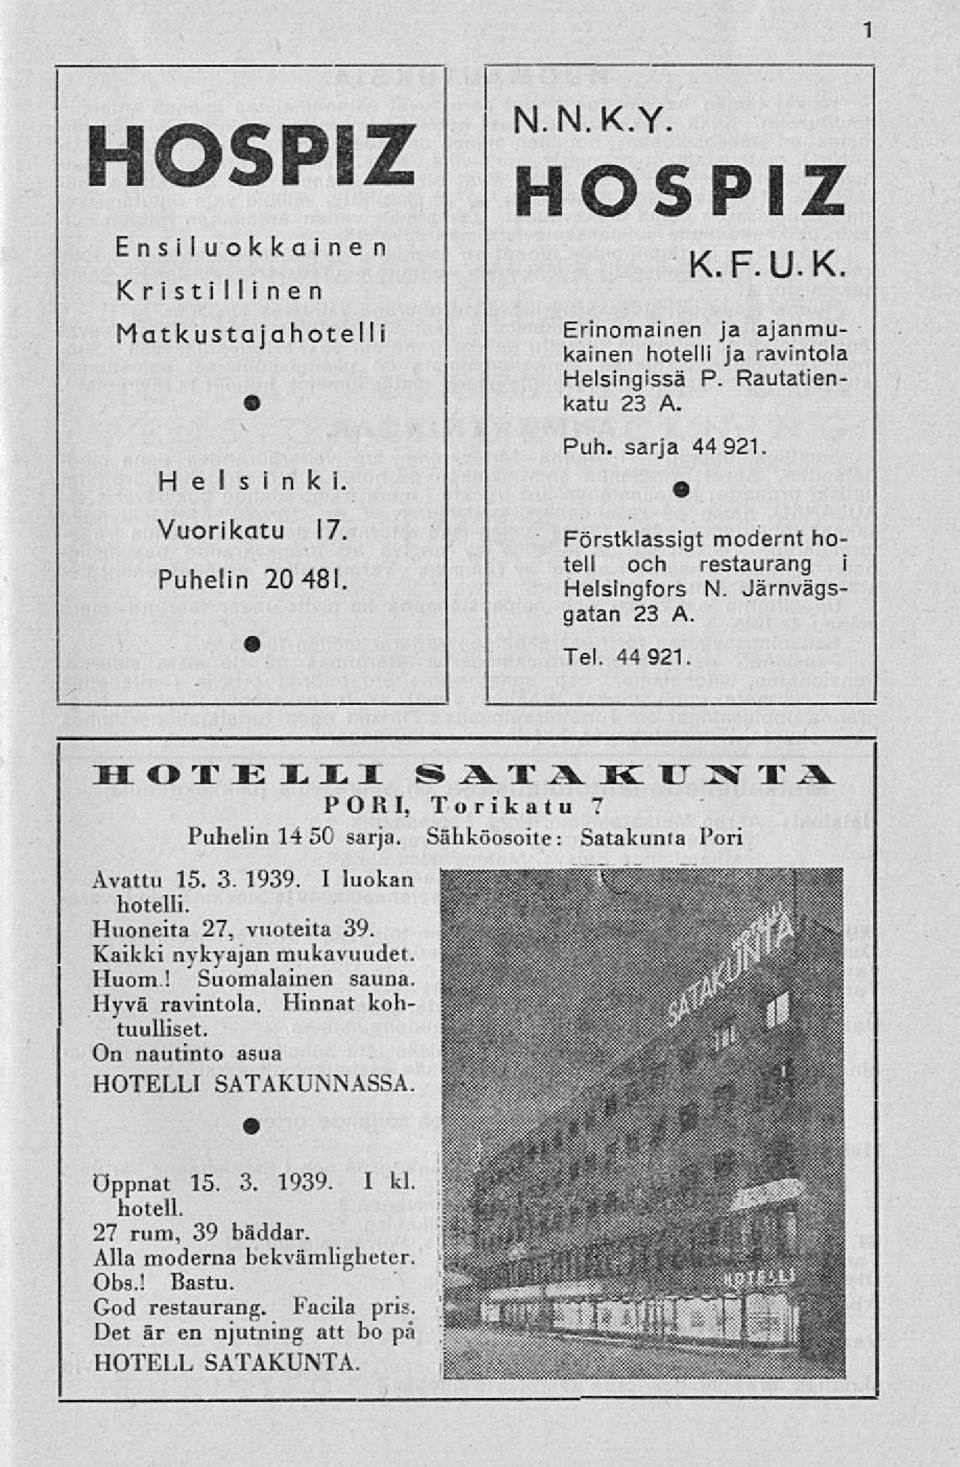 Sähköosoite: Satakunta Pori Avattu 15. 3. 1939. I luokan hotelli. Huoneita 27, vuoteita 39. Kaikki nykyajan mukavuudet. Huom! Suomalainen sauna. Hyvä ravintola. Hinnat kohtuulliset.